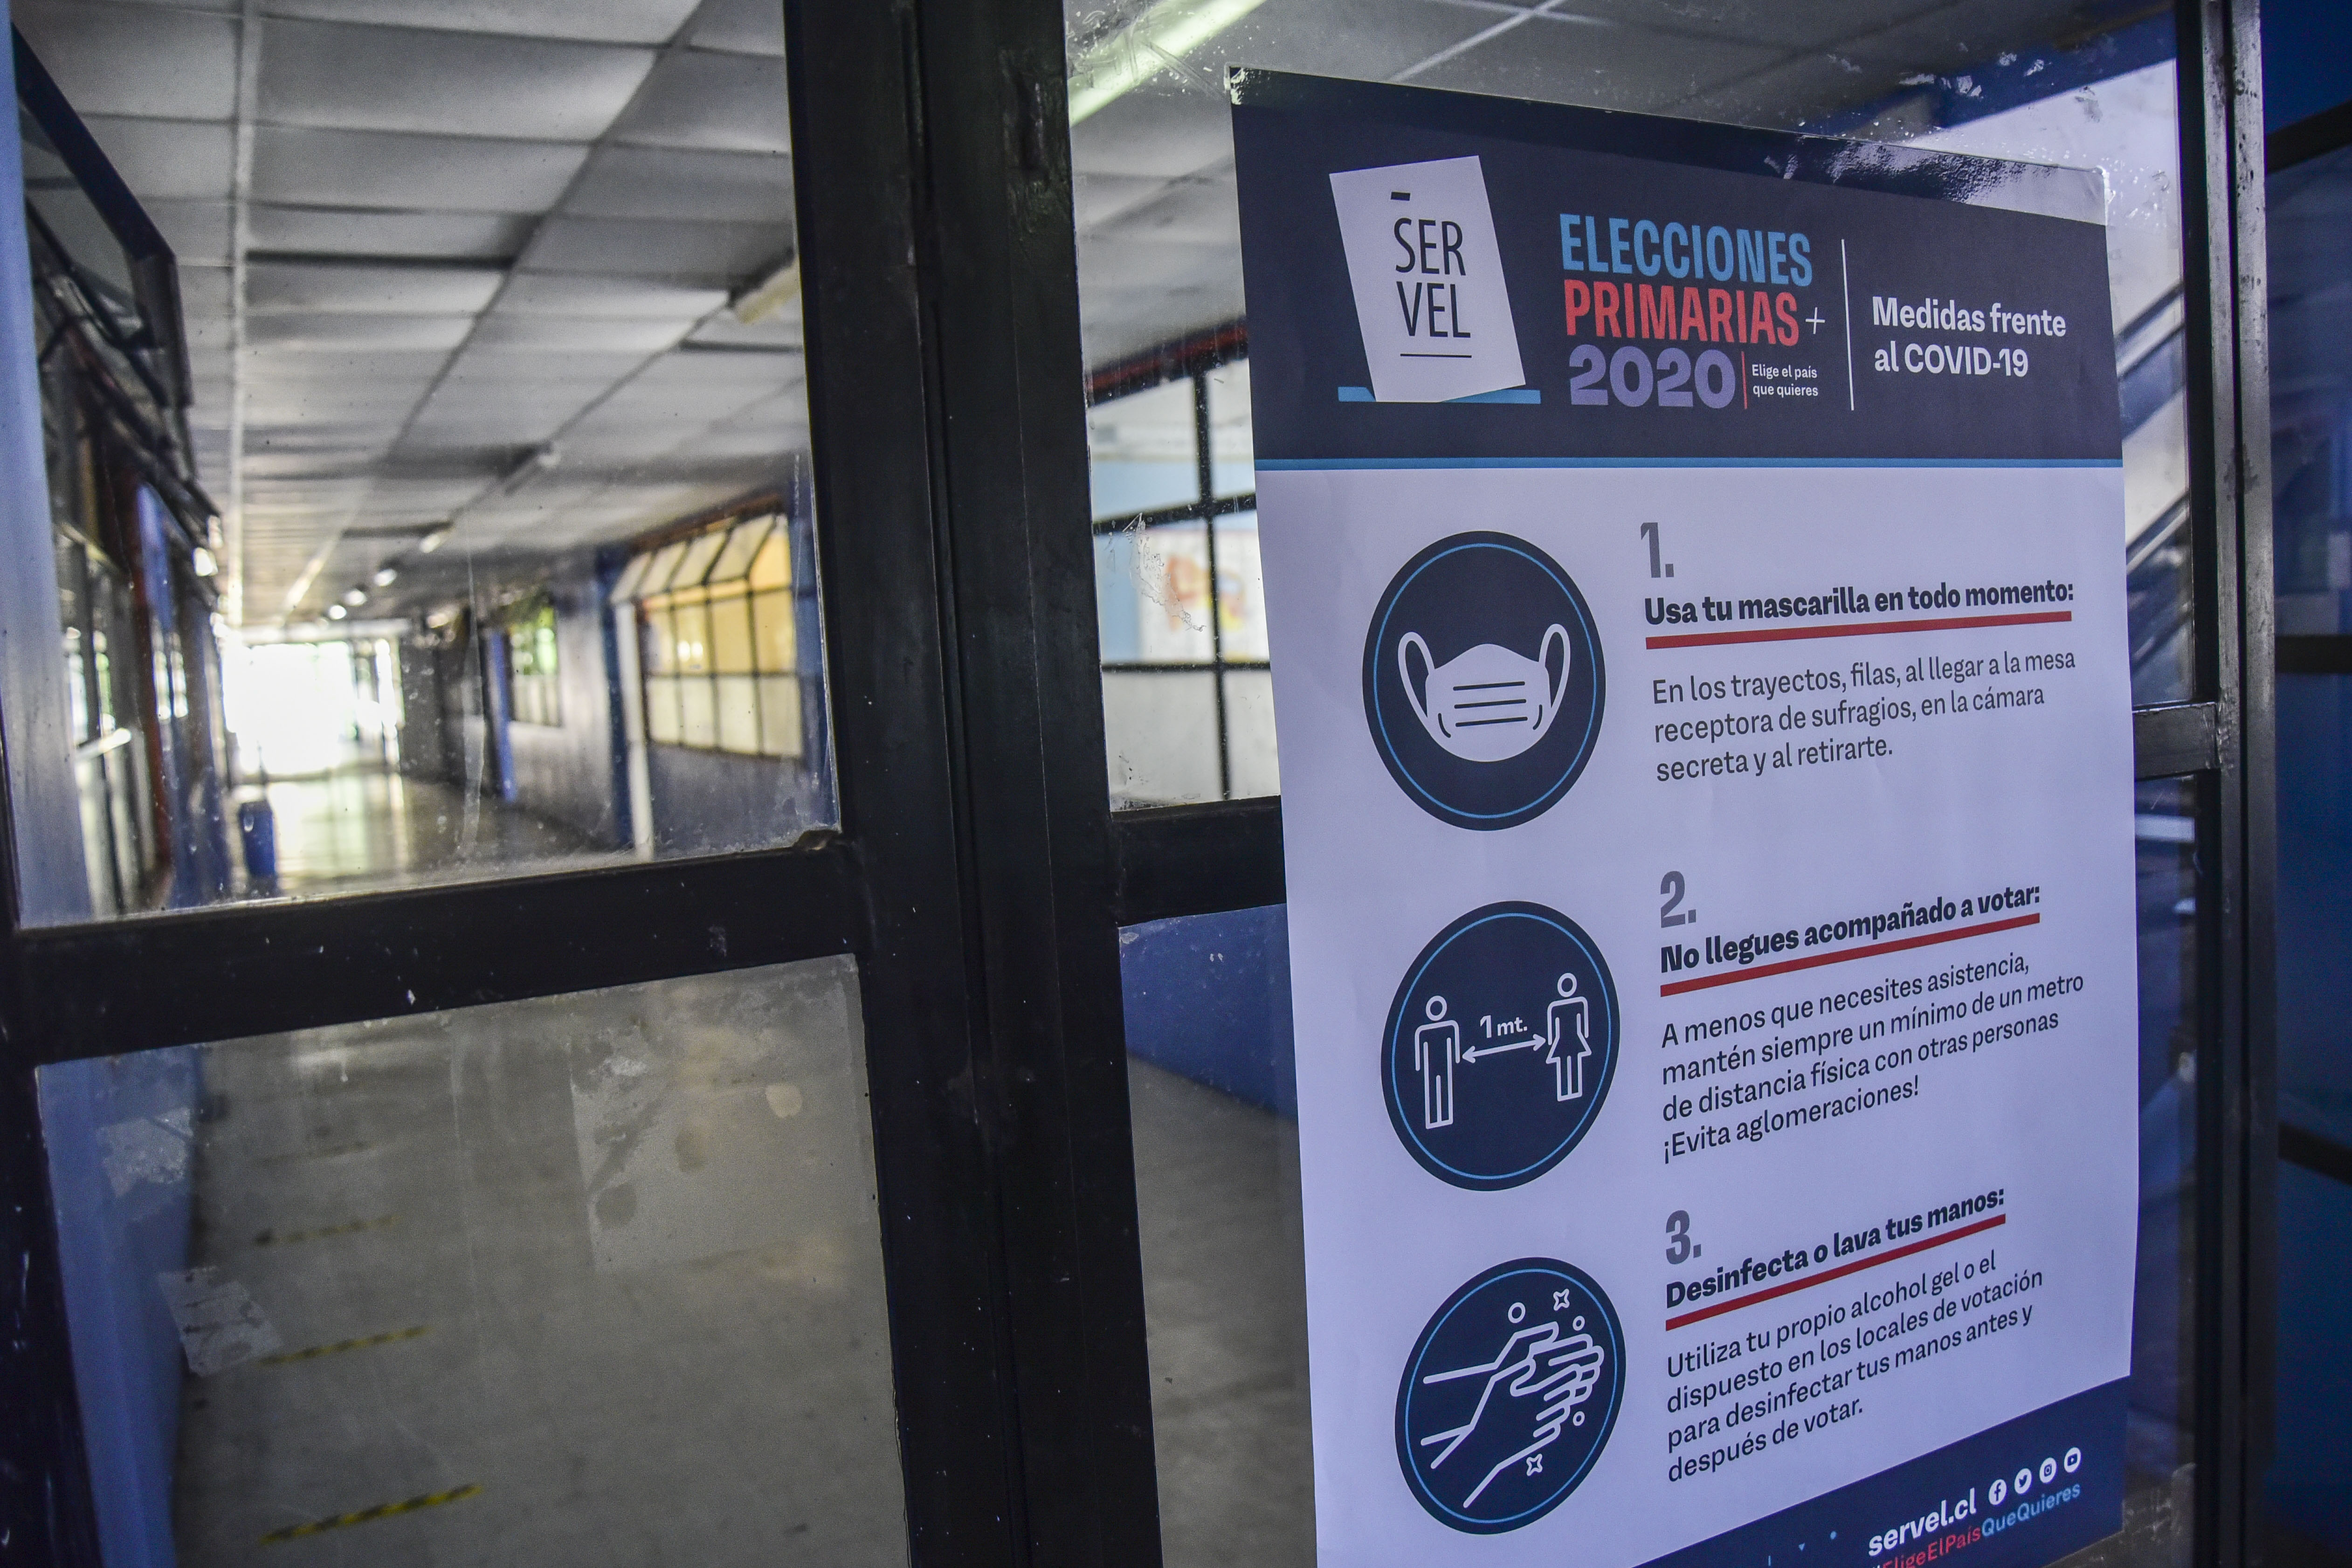 Valparaiso: Preparacion De Locales De Votacion Para Las Primarias 2020